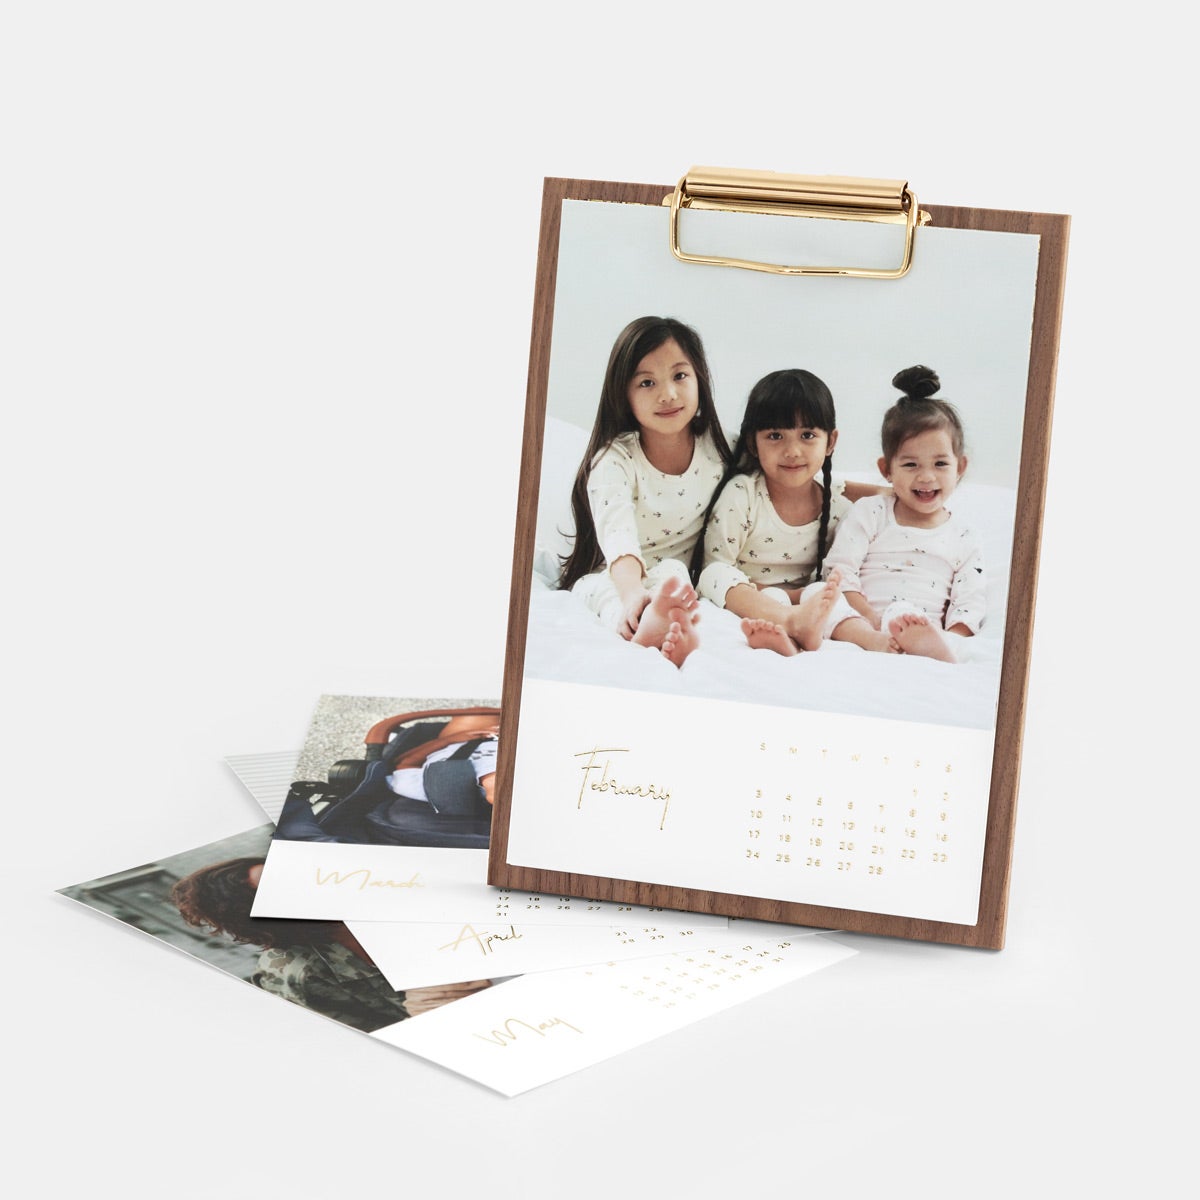 walnut desk calendar with photo of children